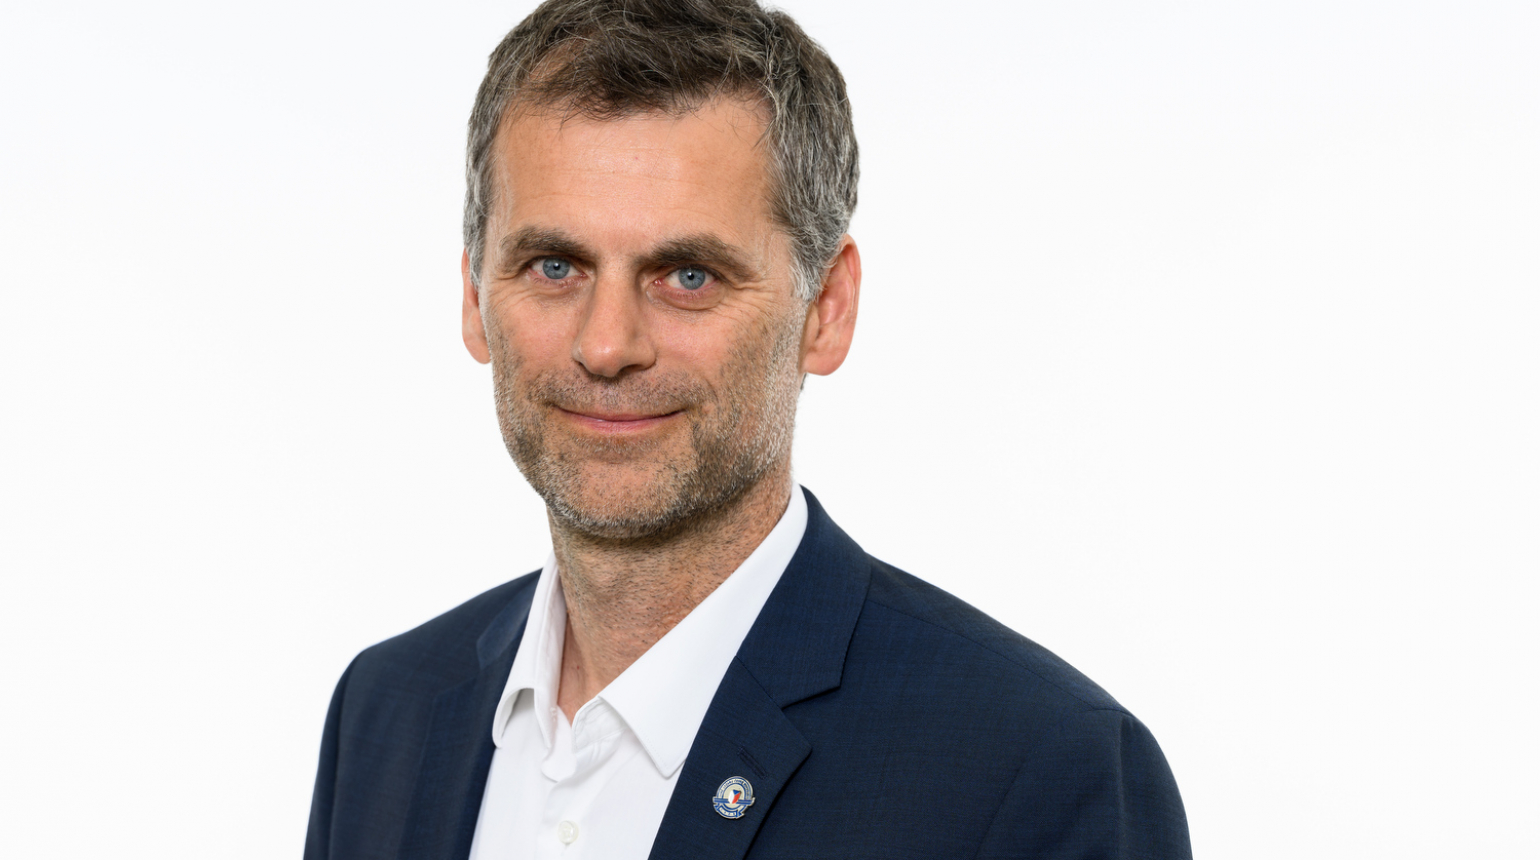 Filip Brýdl rezignoval na pozici člena výkonného výboru SLČR